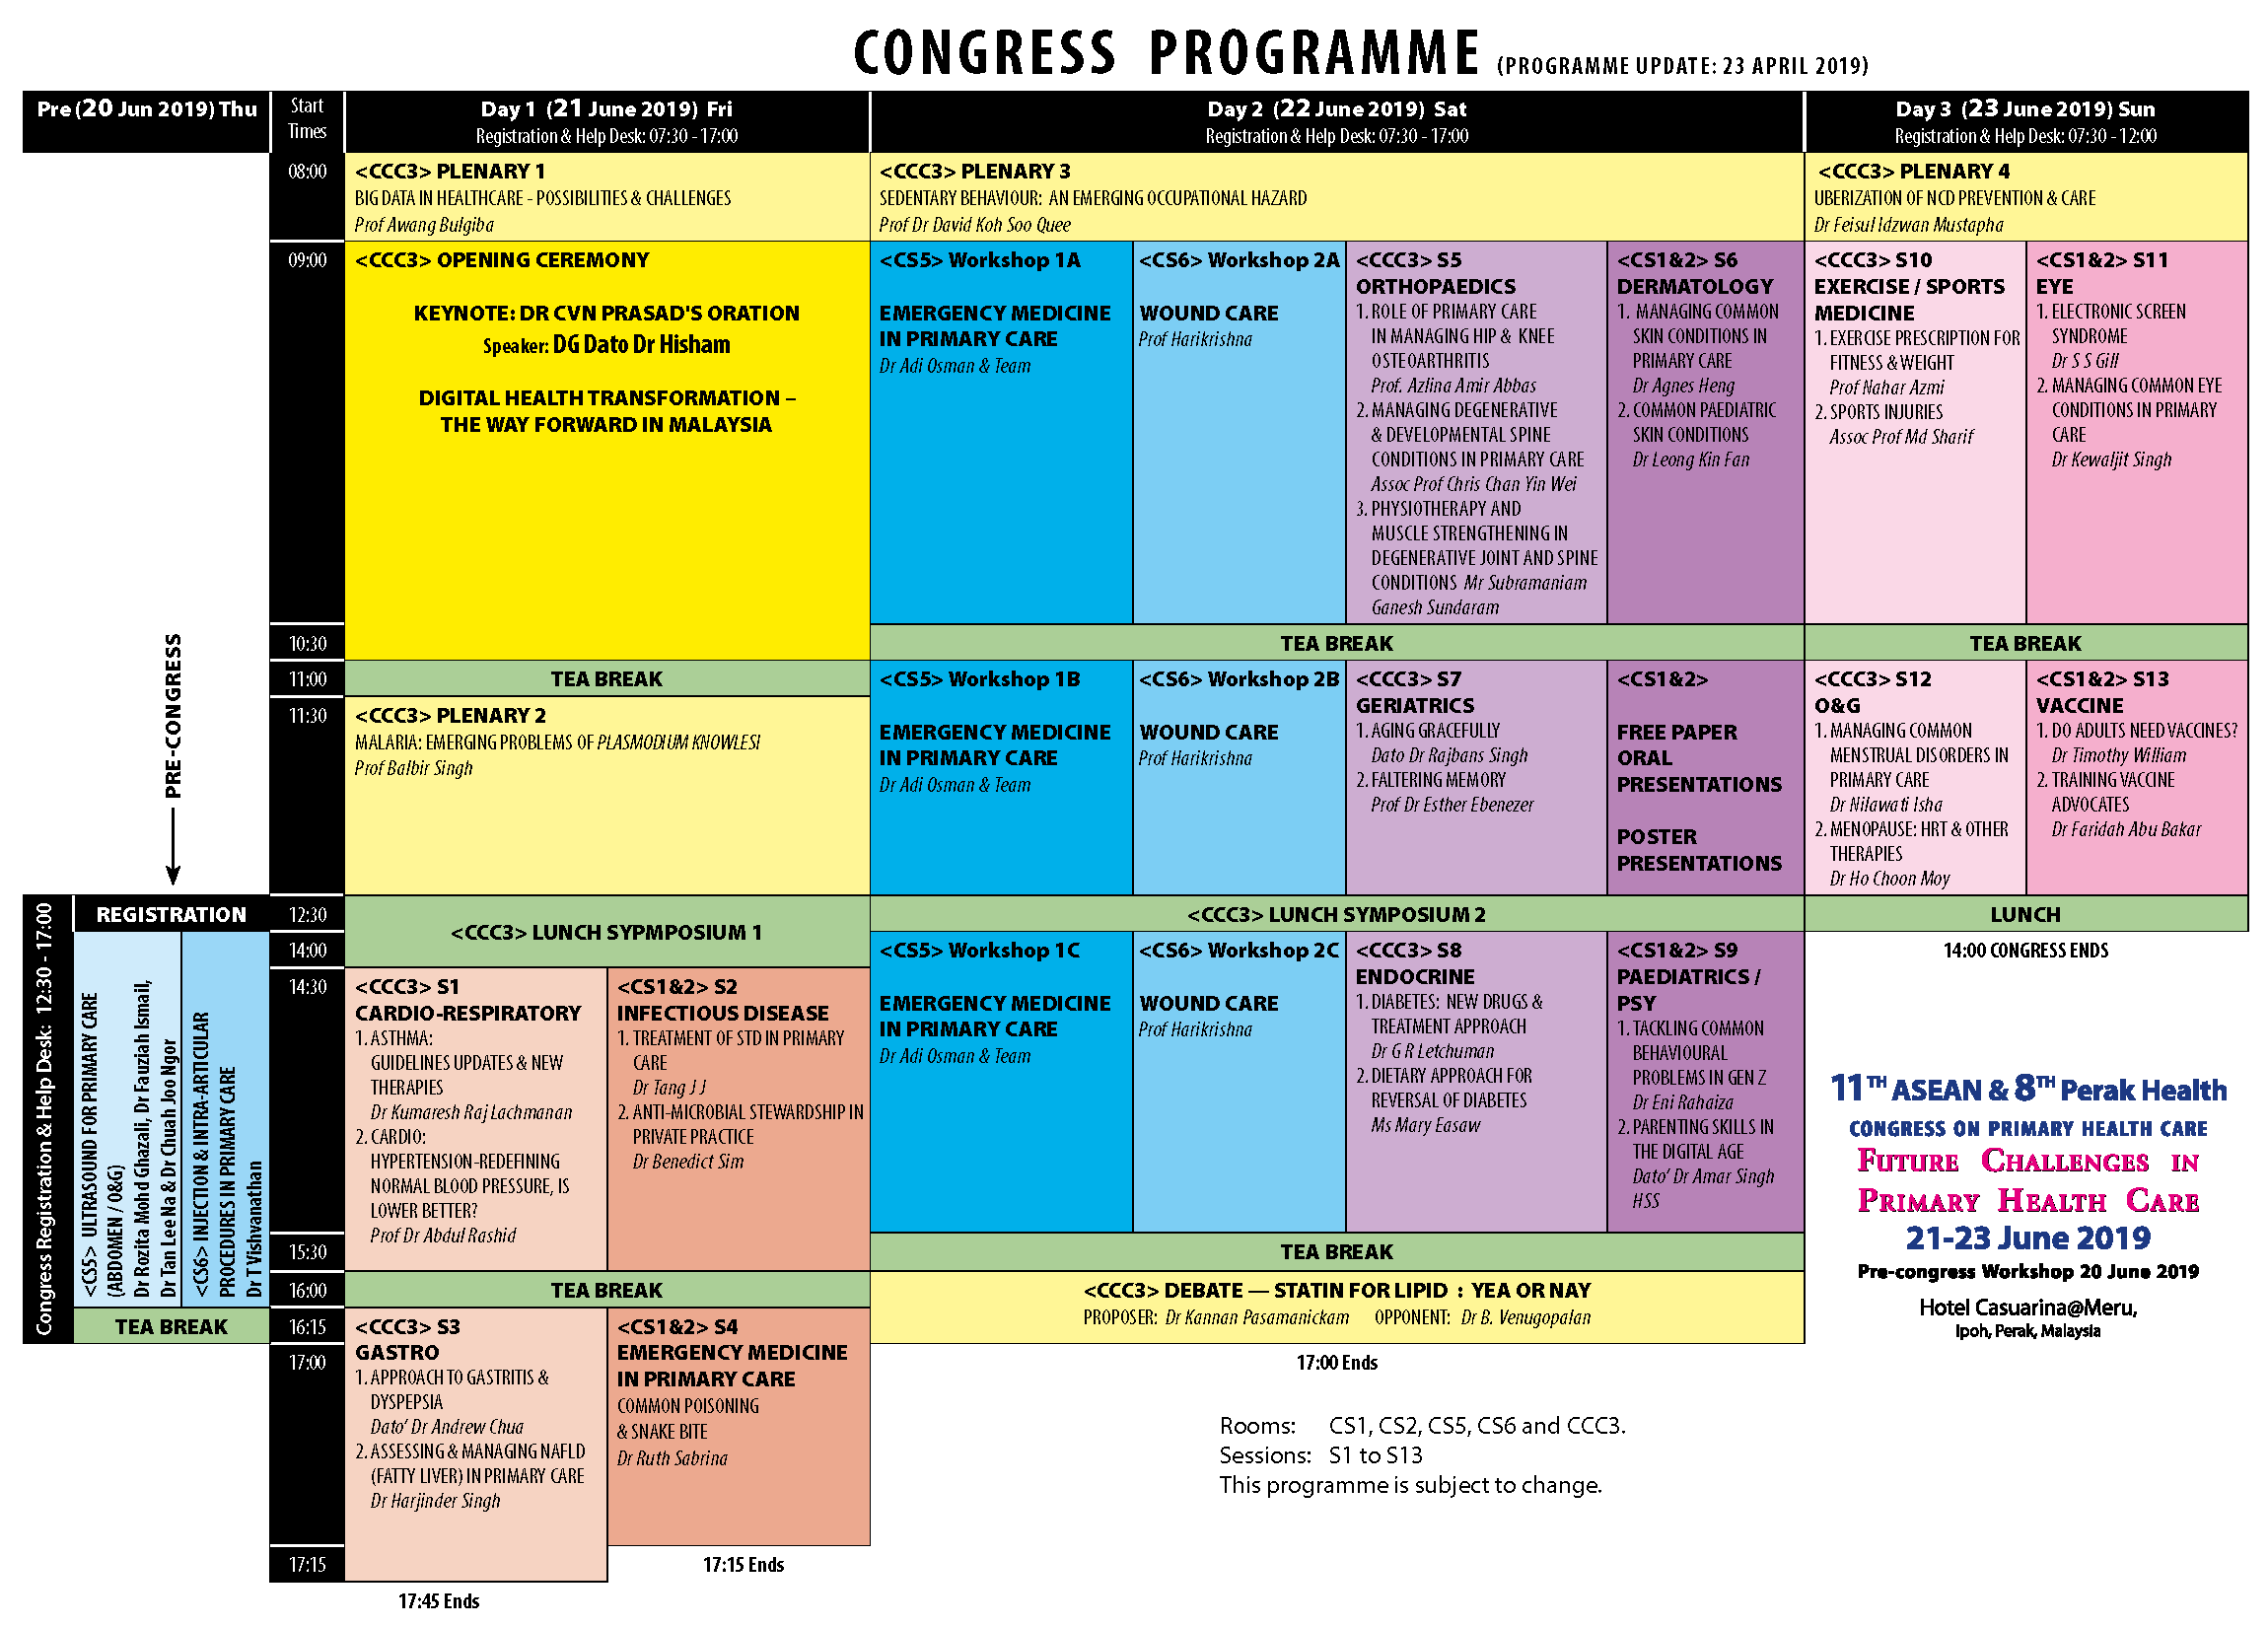 Tentative Programme (23 Apr 2019) of 11th ASEAN & 8th Perak Health Congress in Primary Health Care